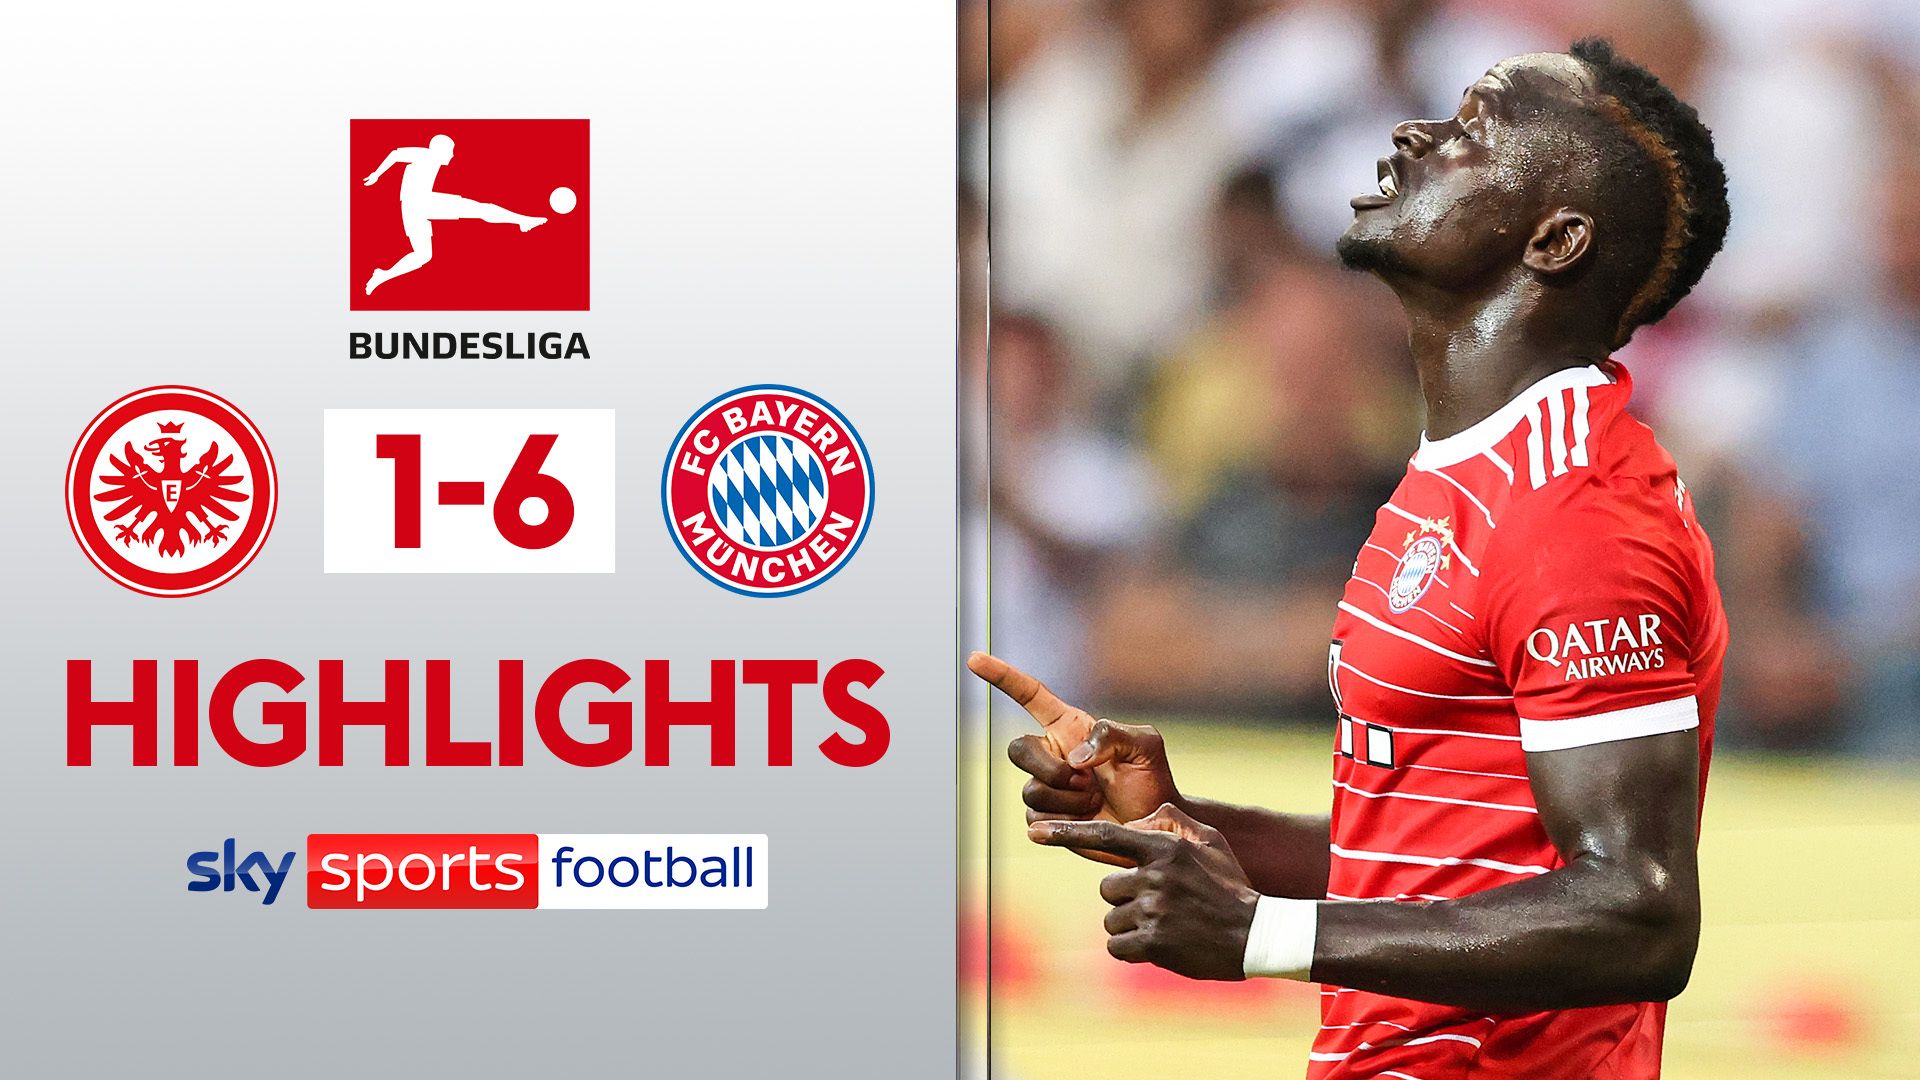 Mane scores as Bayern put six past Frankfurt in season opener